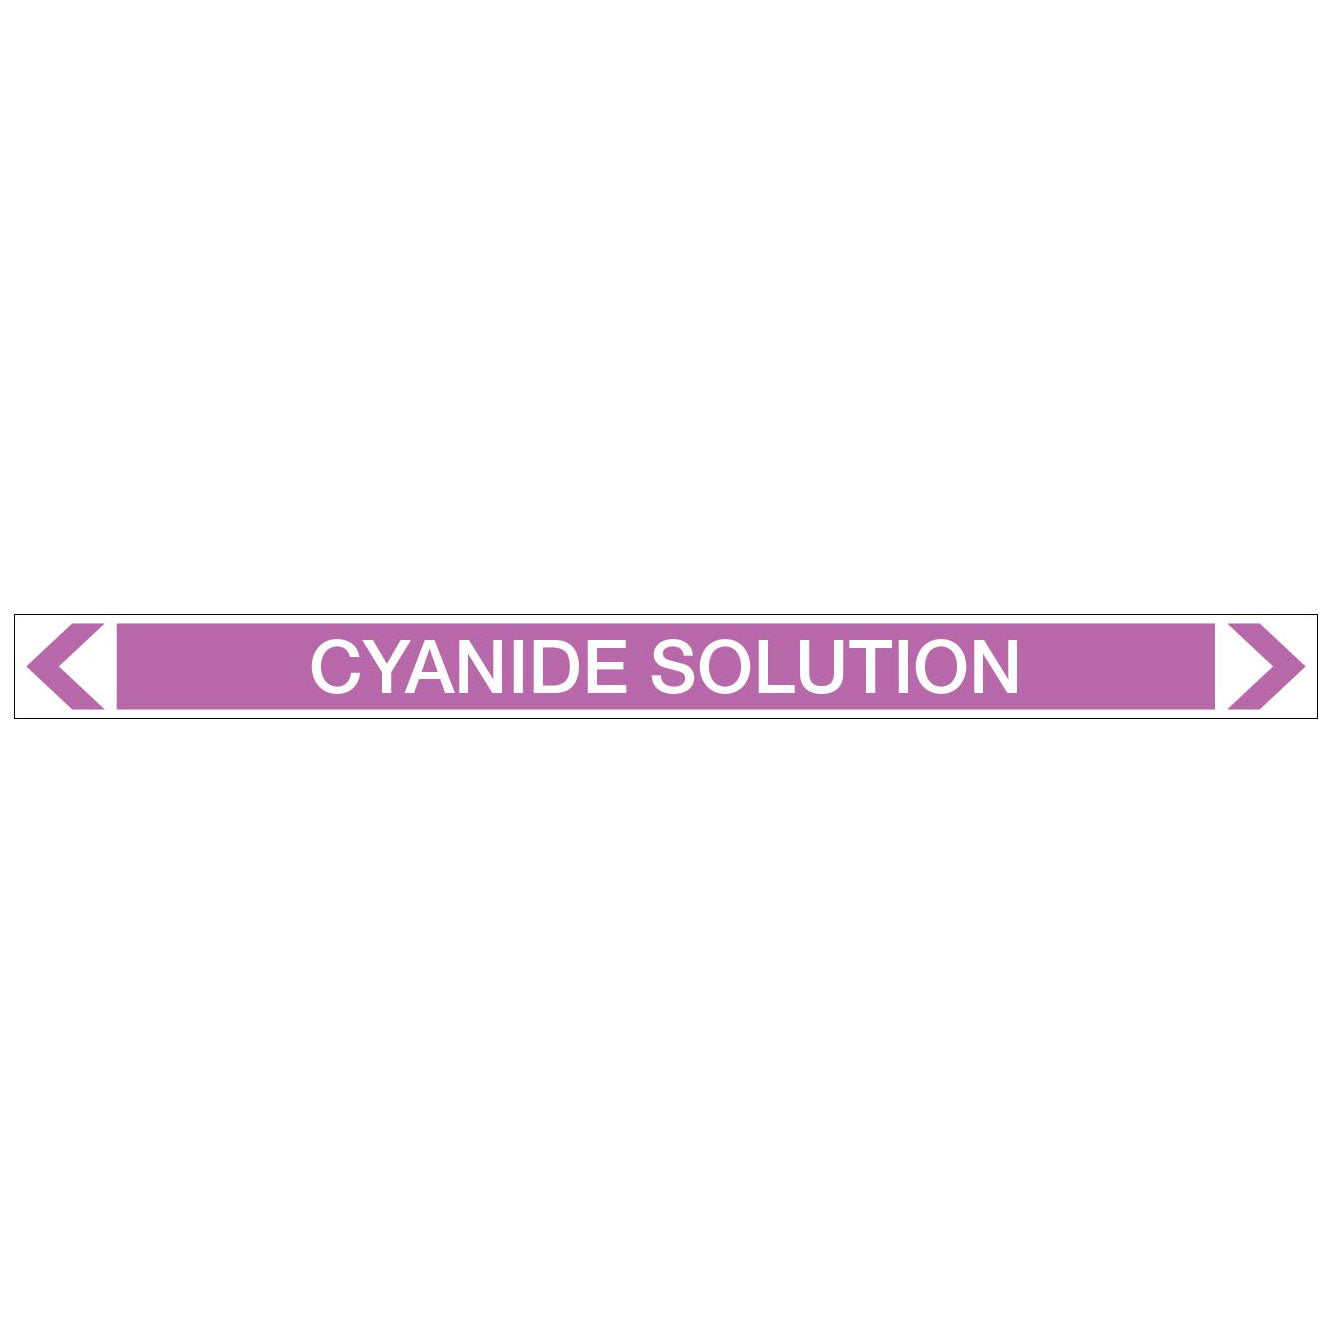 Alkalis / Acids - Cyanide Solution - Pipe Marker Sticker